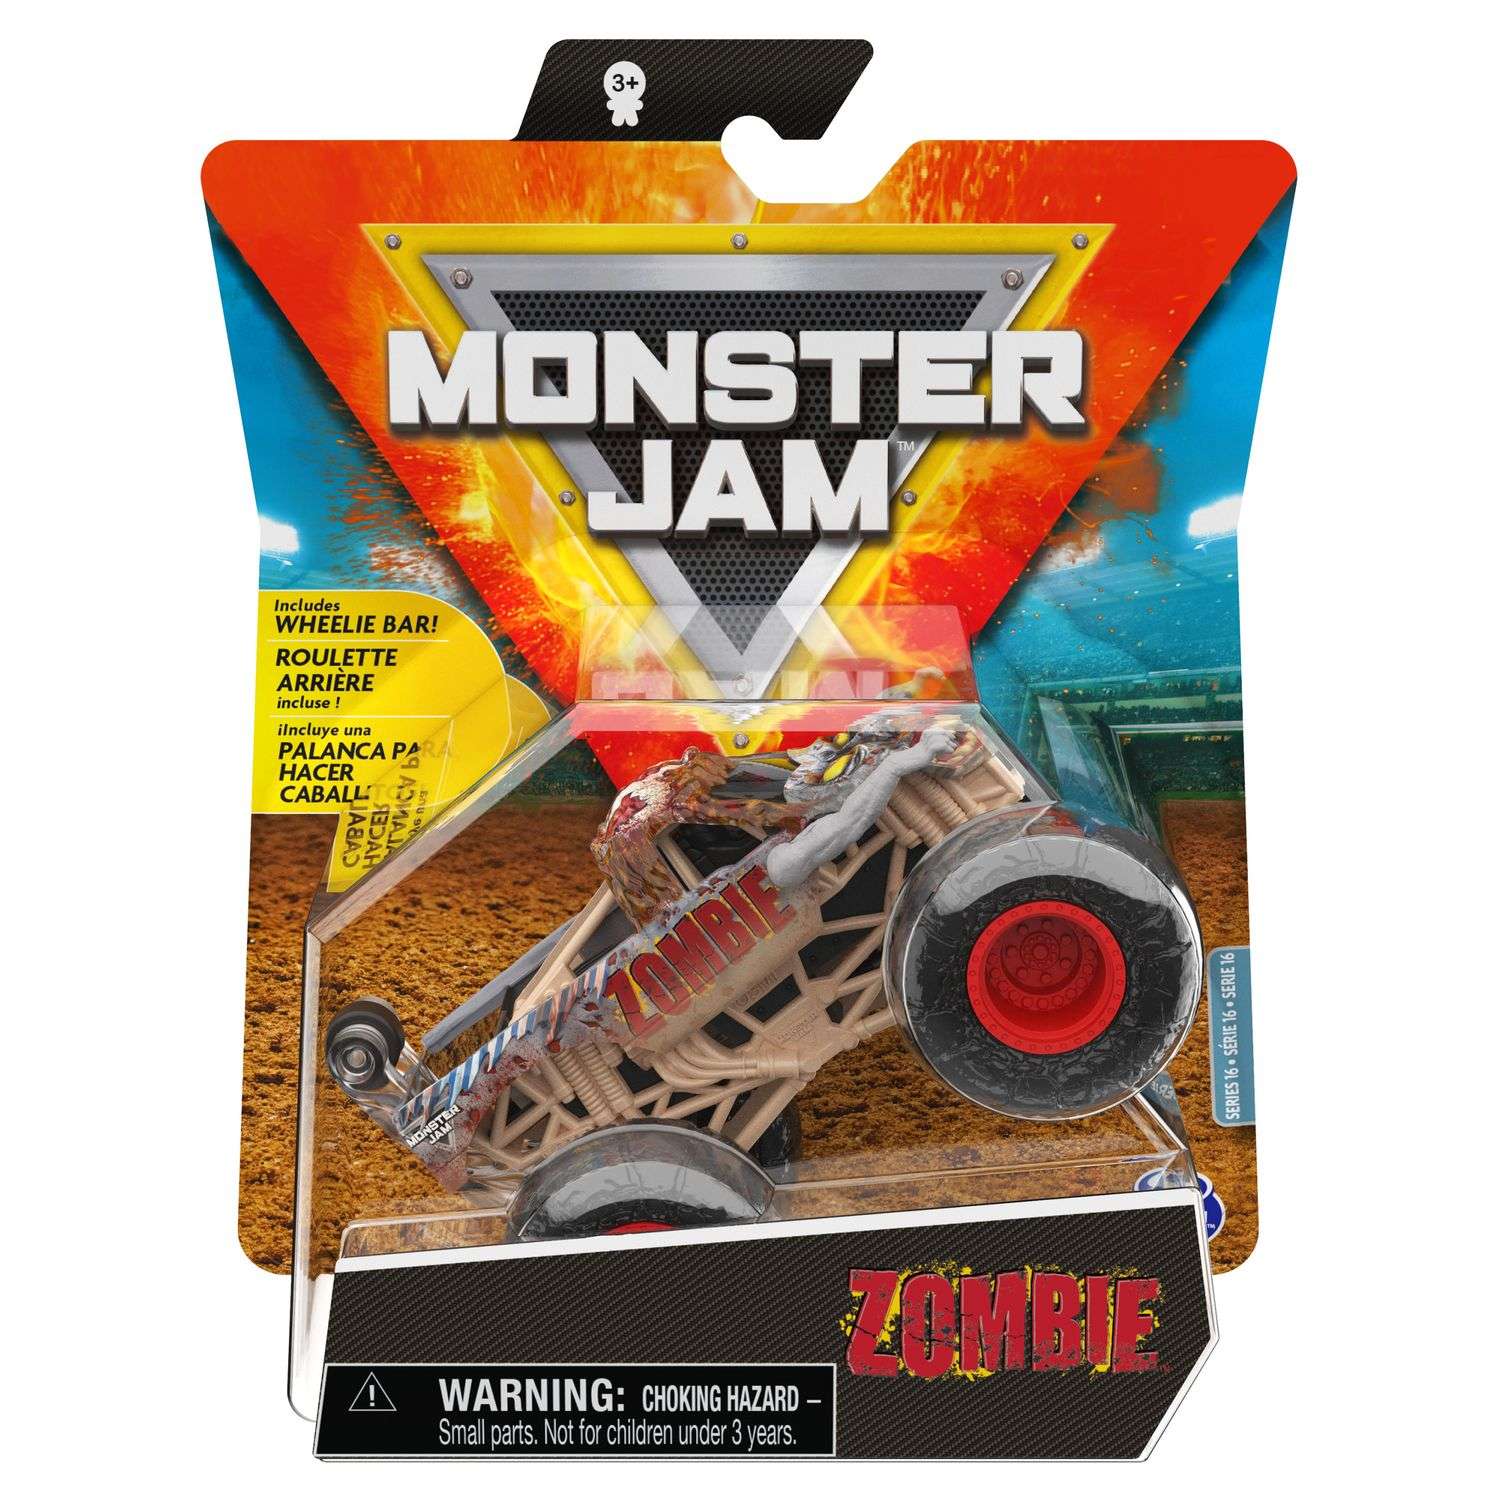 Машинка Monster Jam 1:64 Zombie 6060870 6060870 - фото 2